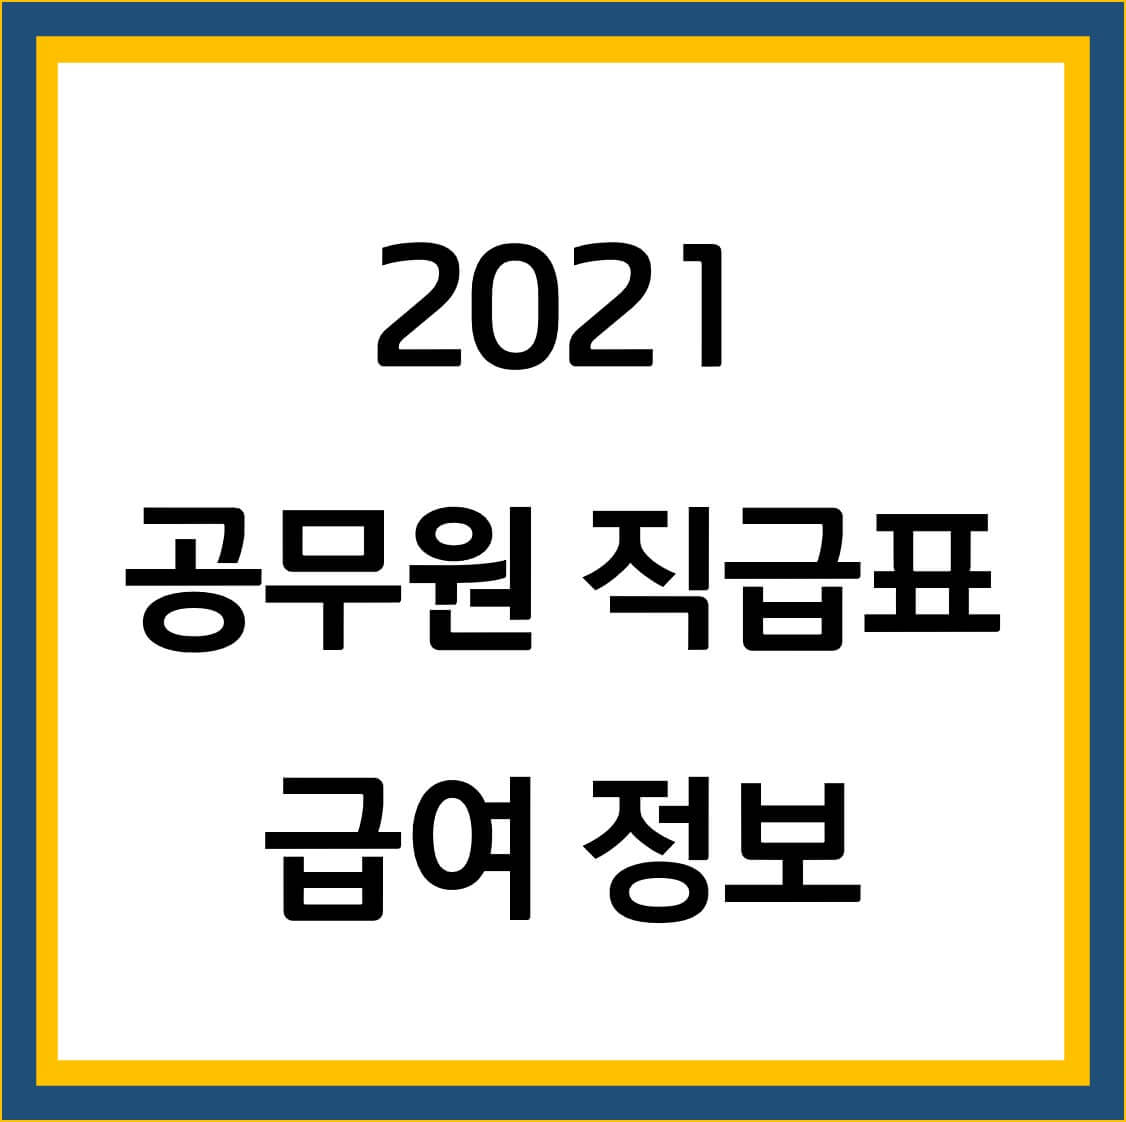 2021 공무원 직급표 급여 정보 썸네일